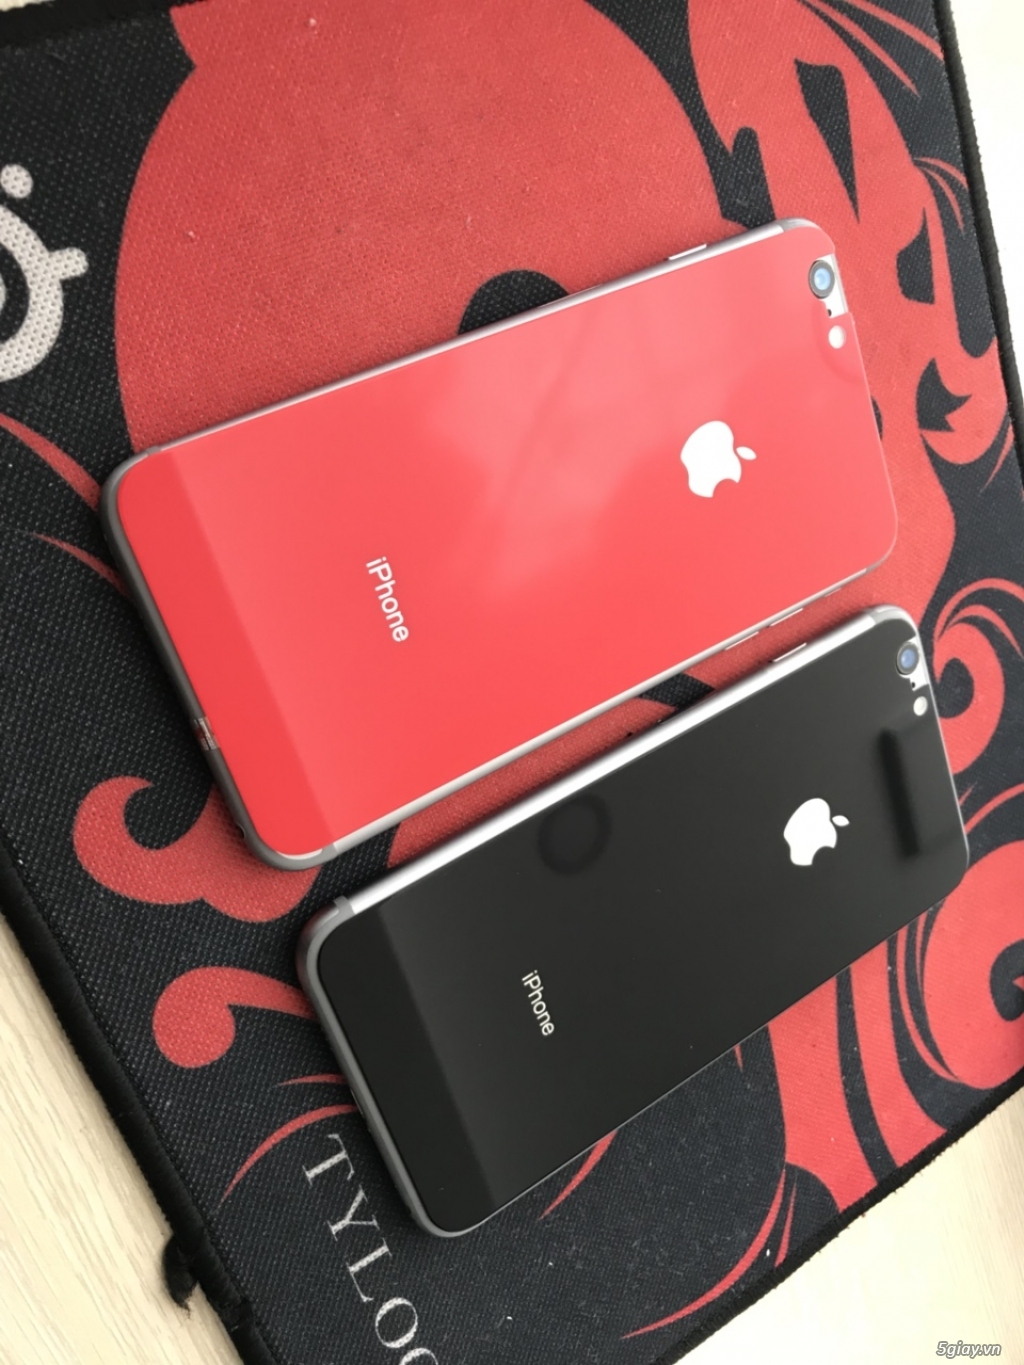 Chuyên Bán Iphone-Ipad sỉ lẻ toàn quốc GIÁ BAO TỐT !!! - 4